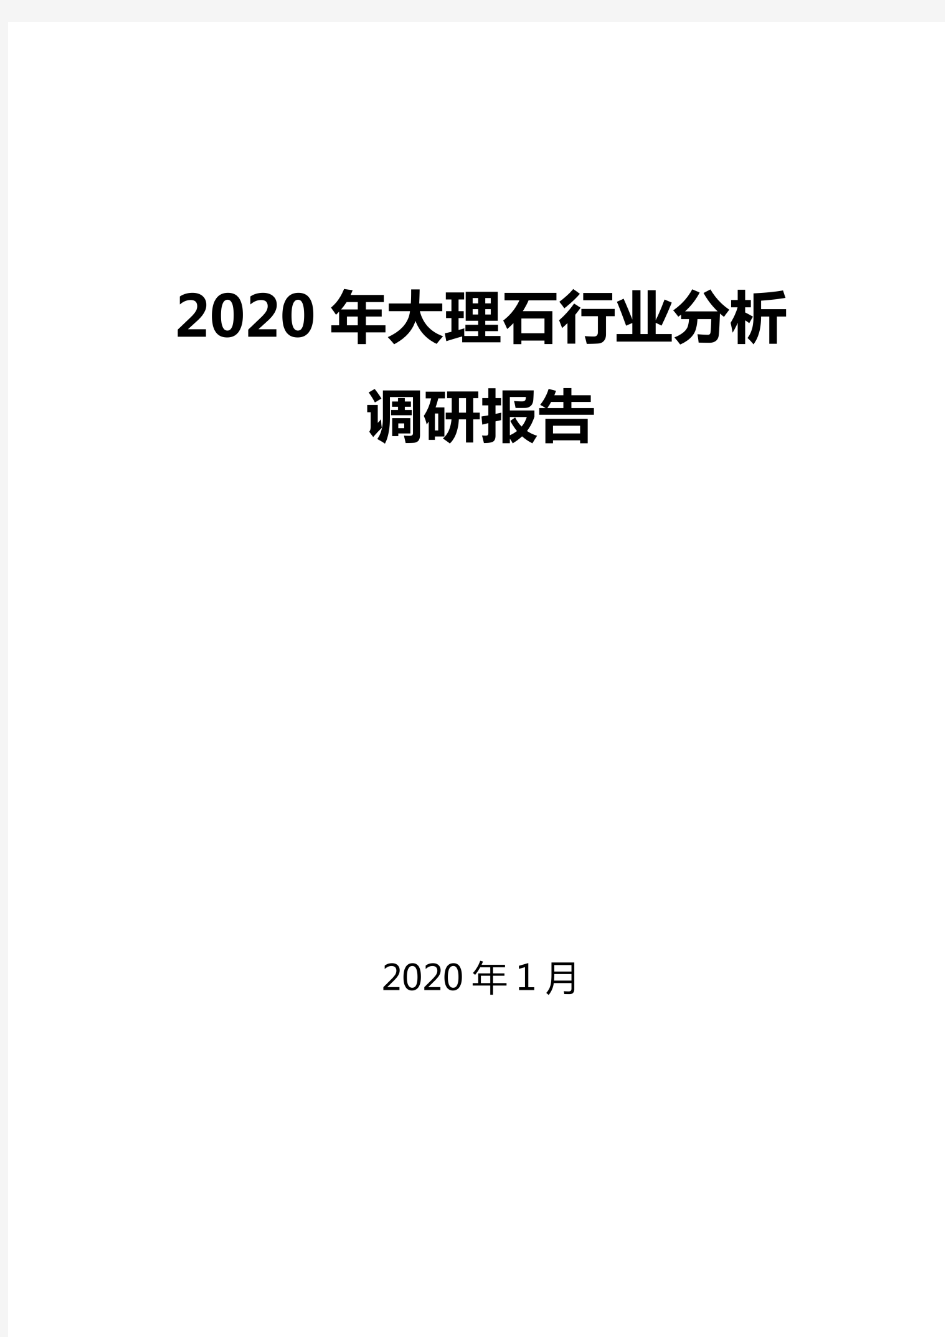 2020大理石行业分析报告